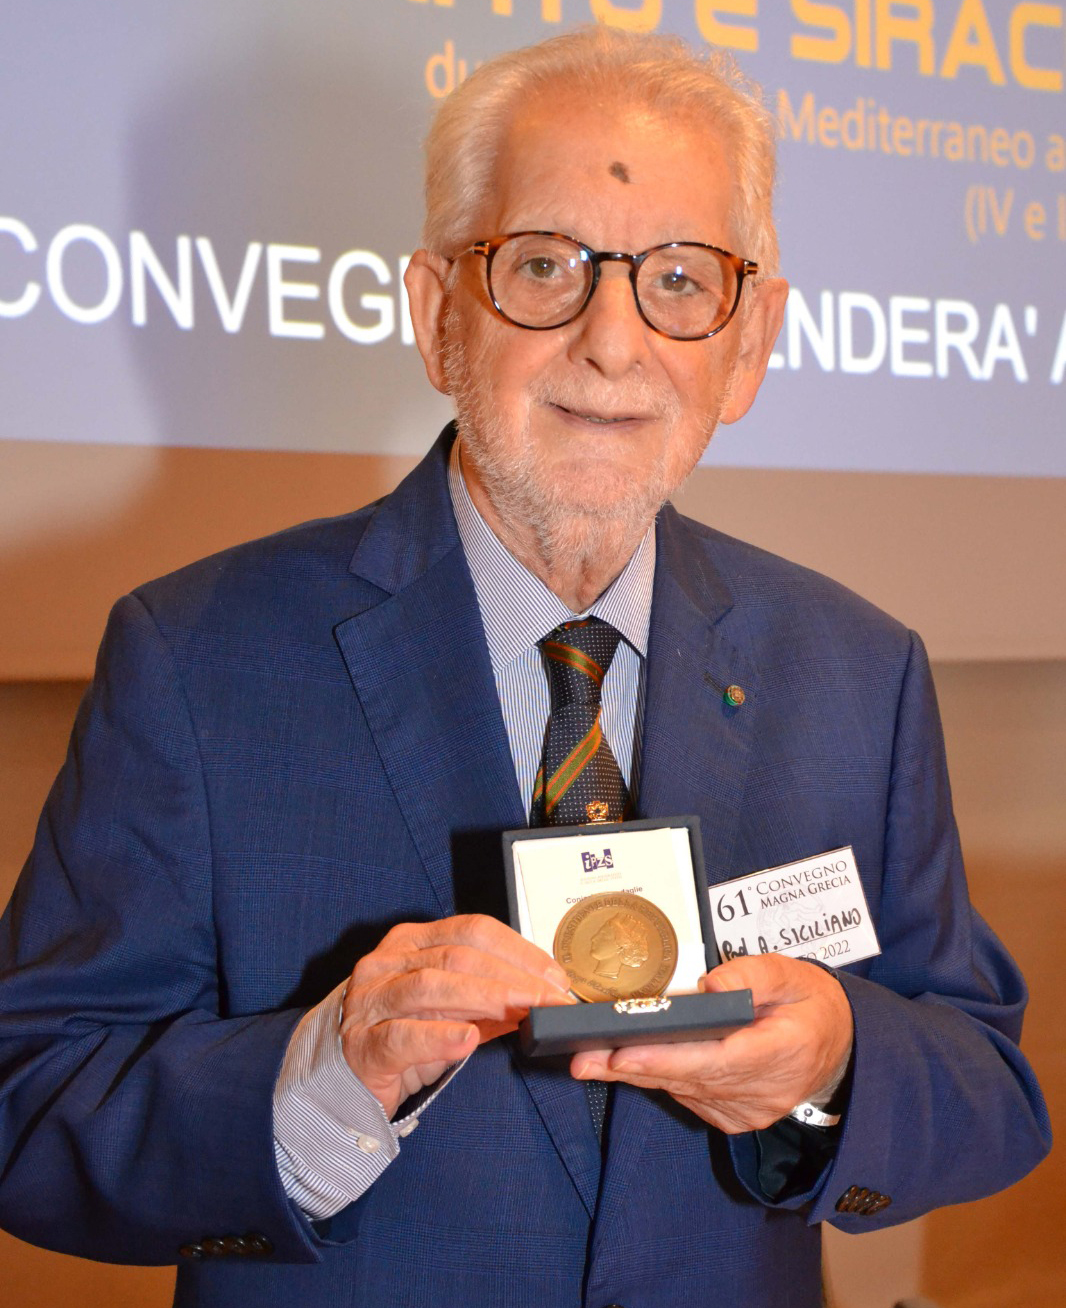 Il Presidente e “anima storica” del Convegno, prof. Aldo Siciliano con la medaglia ricevuta dal Presidente della Repubblica , Mattarella, per l’alto valore culturale dell’ISAMG